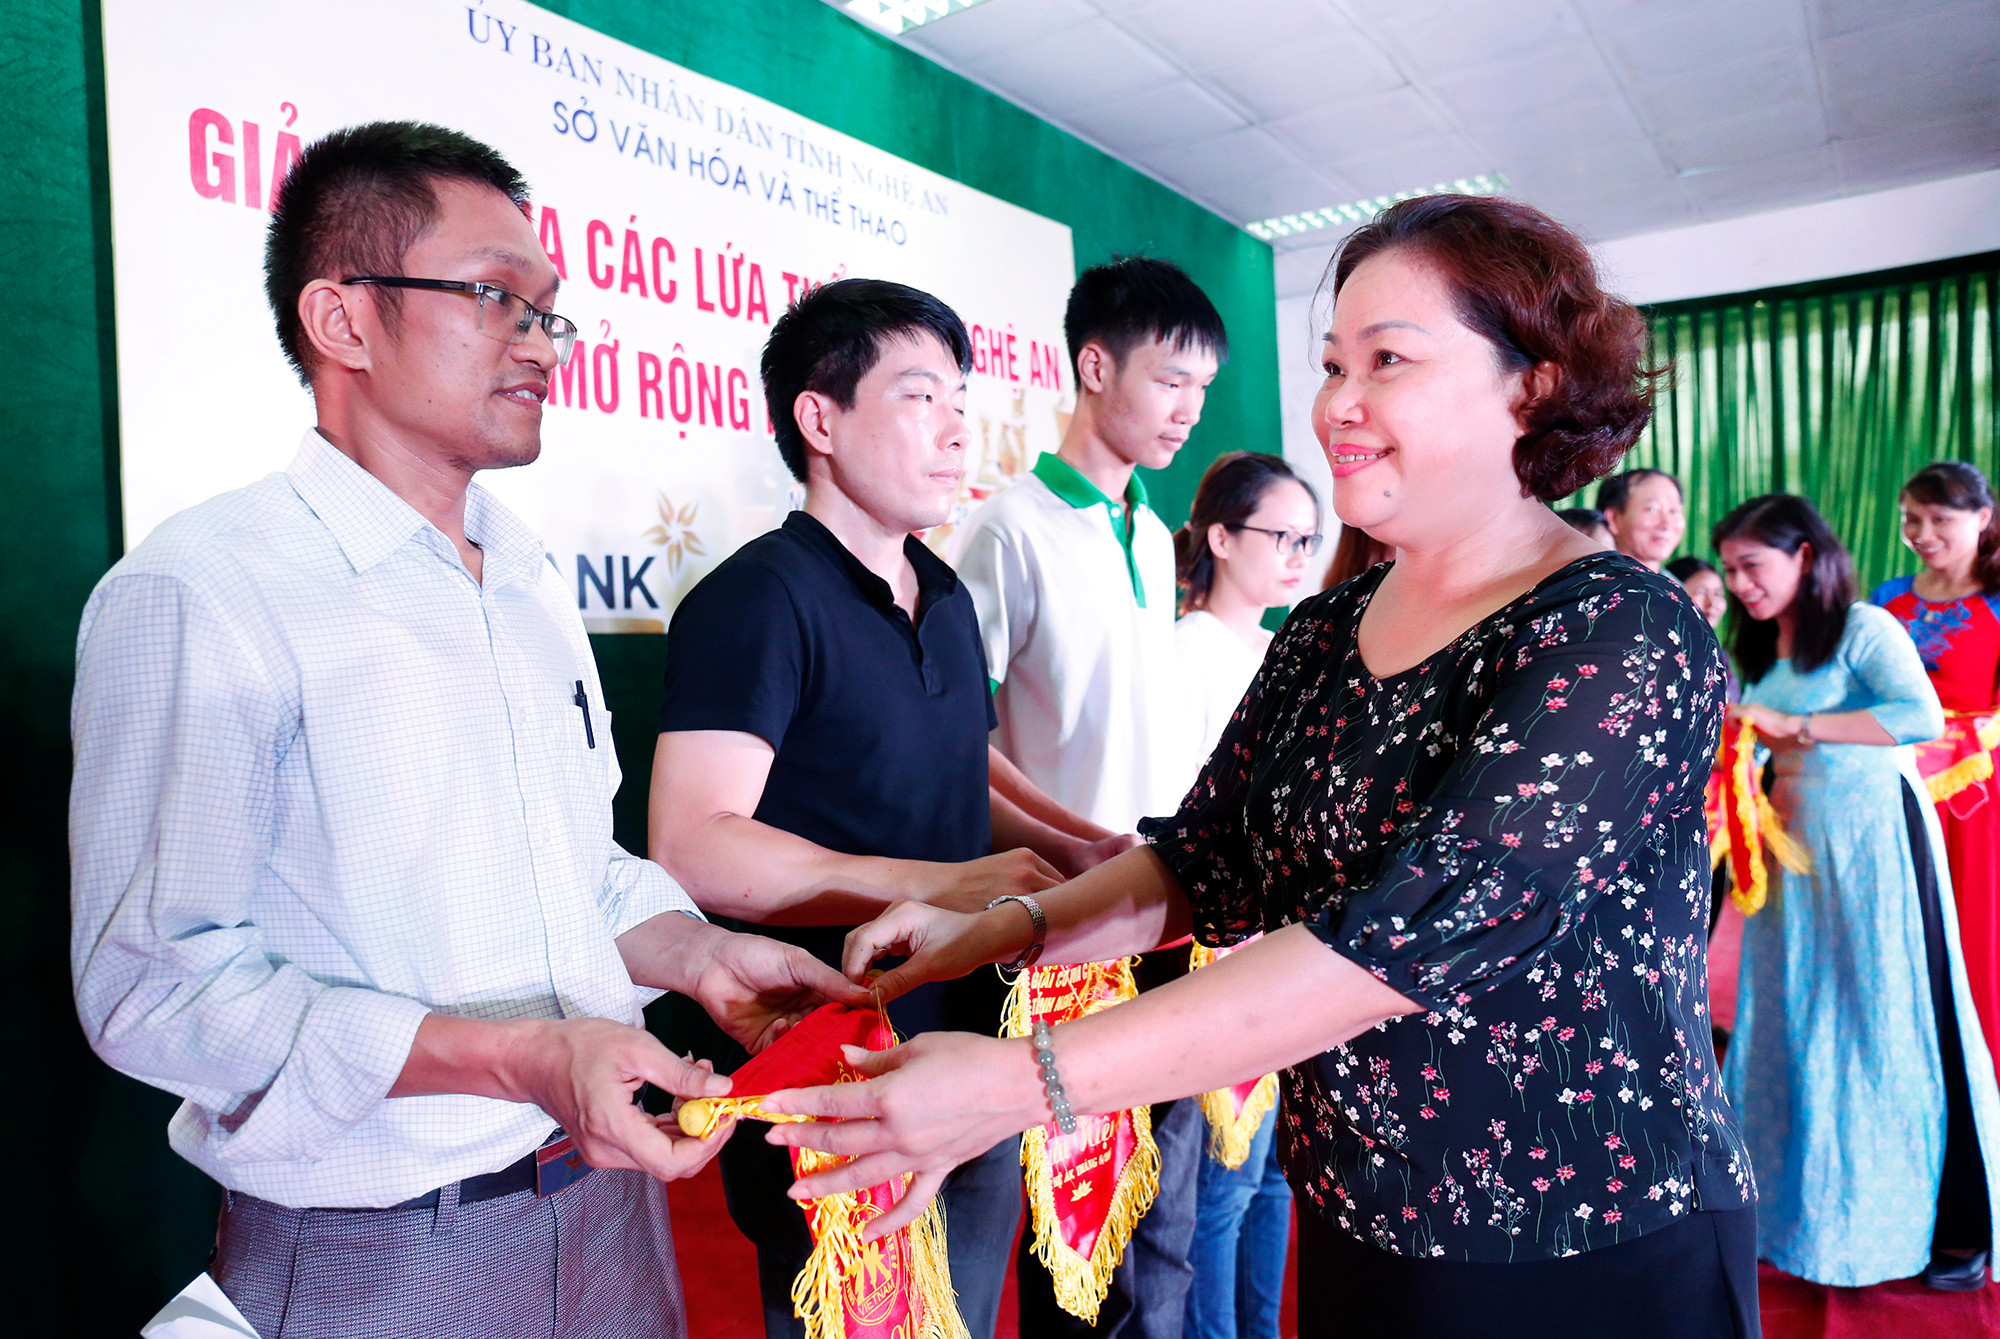 Đồng chí Nguyễn Thị Thu Hường trao cờ cho các đại diện vận động viên tham dự giải. Ảnh: Đức Anh